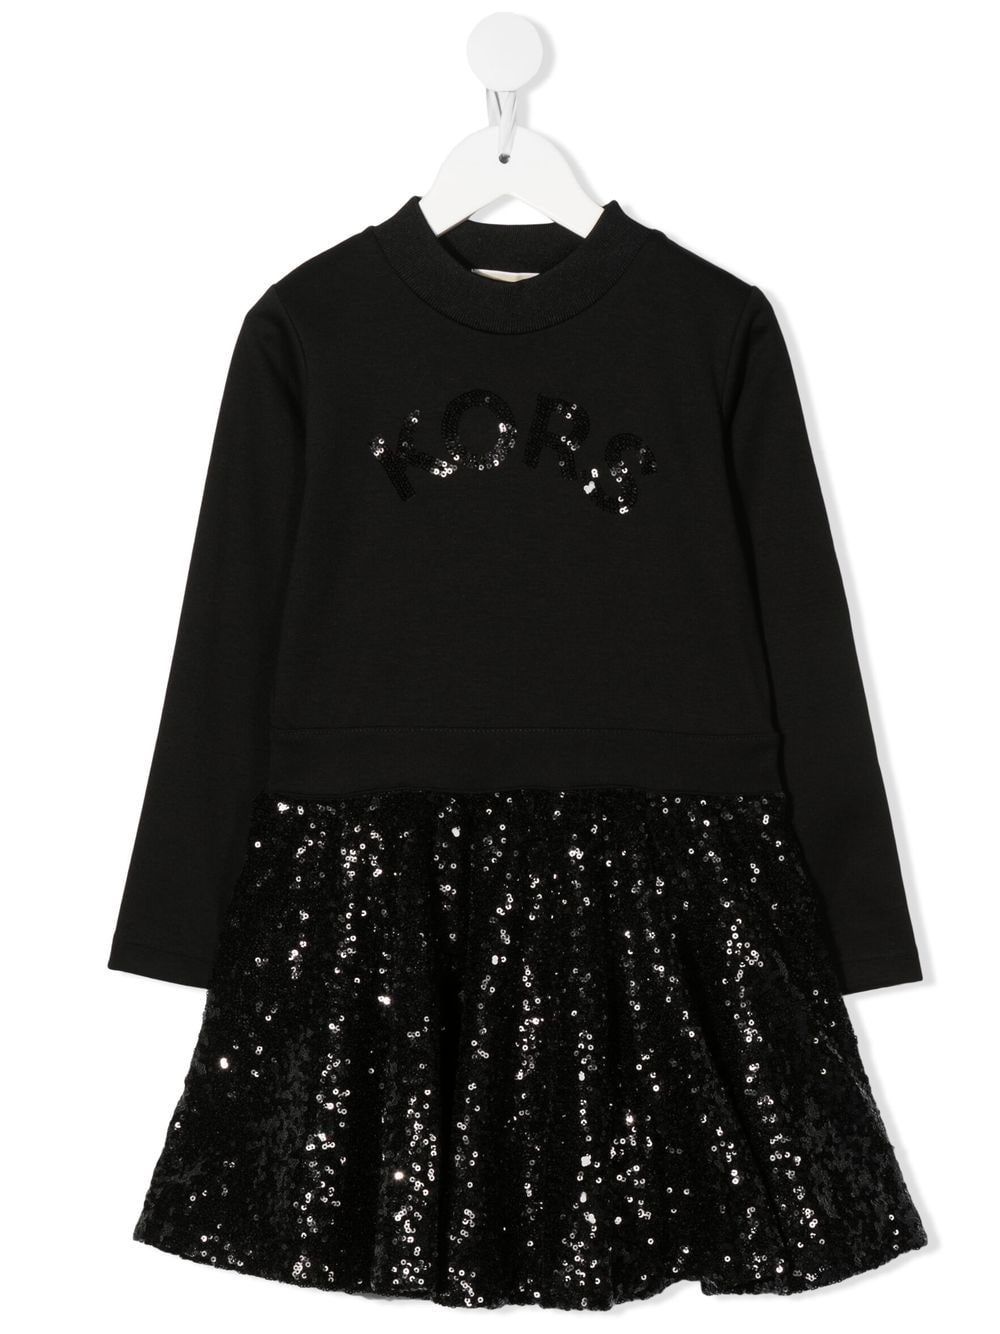 Michael Kors Kids sequin-embellished sweater dress - Black